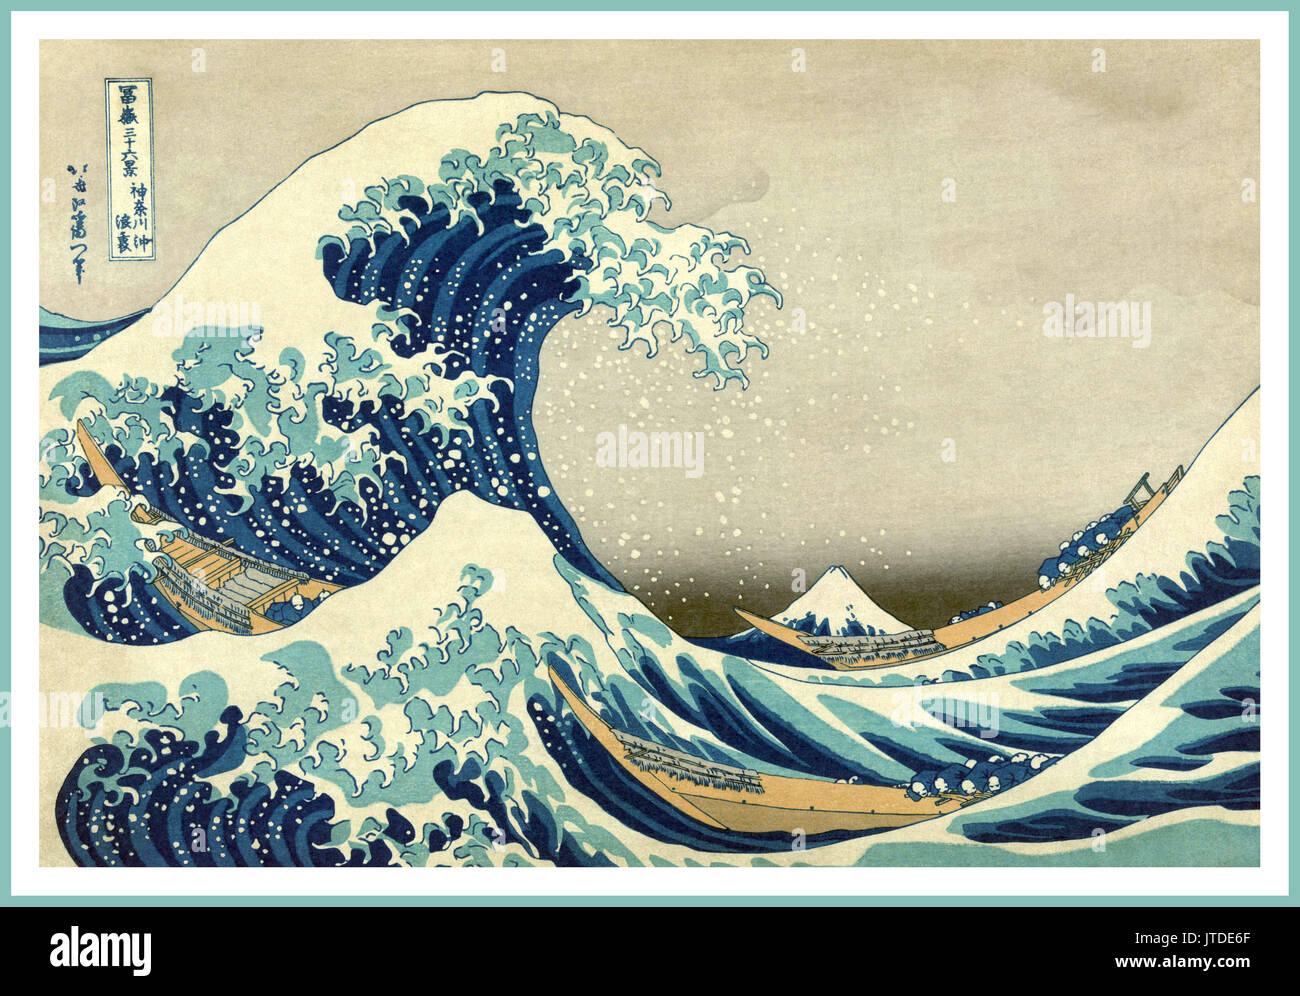 "La gran ola de Kanagawa off' el Monte Fuji de Japón Katsushika Hokusai onda ondas Vintage póster de arte hecha por el artista Katsushika Hokusai como parte de la serie treinta y seis vistas del Monte Fuji y olas entre 1829-1832. "La gran ola de Kanagawa off' Foto de stock